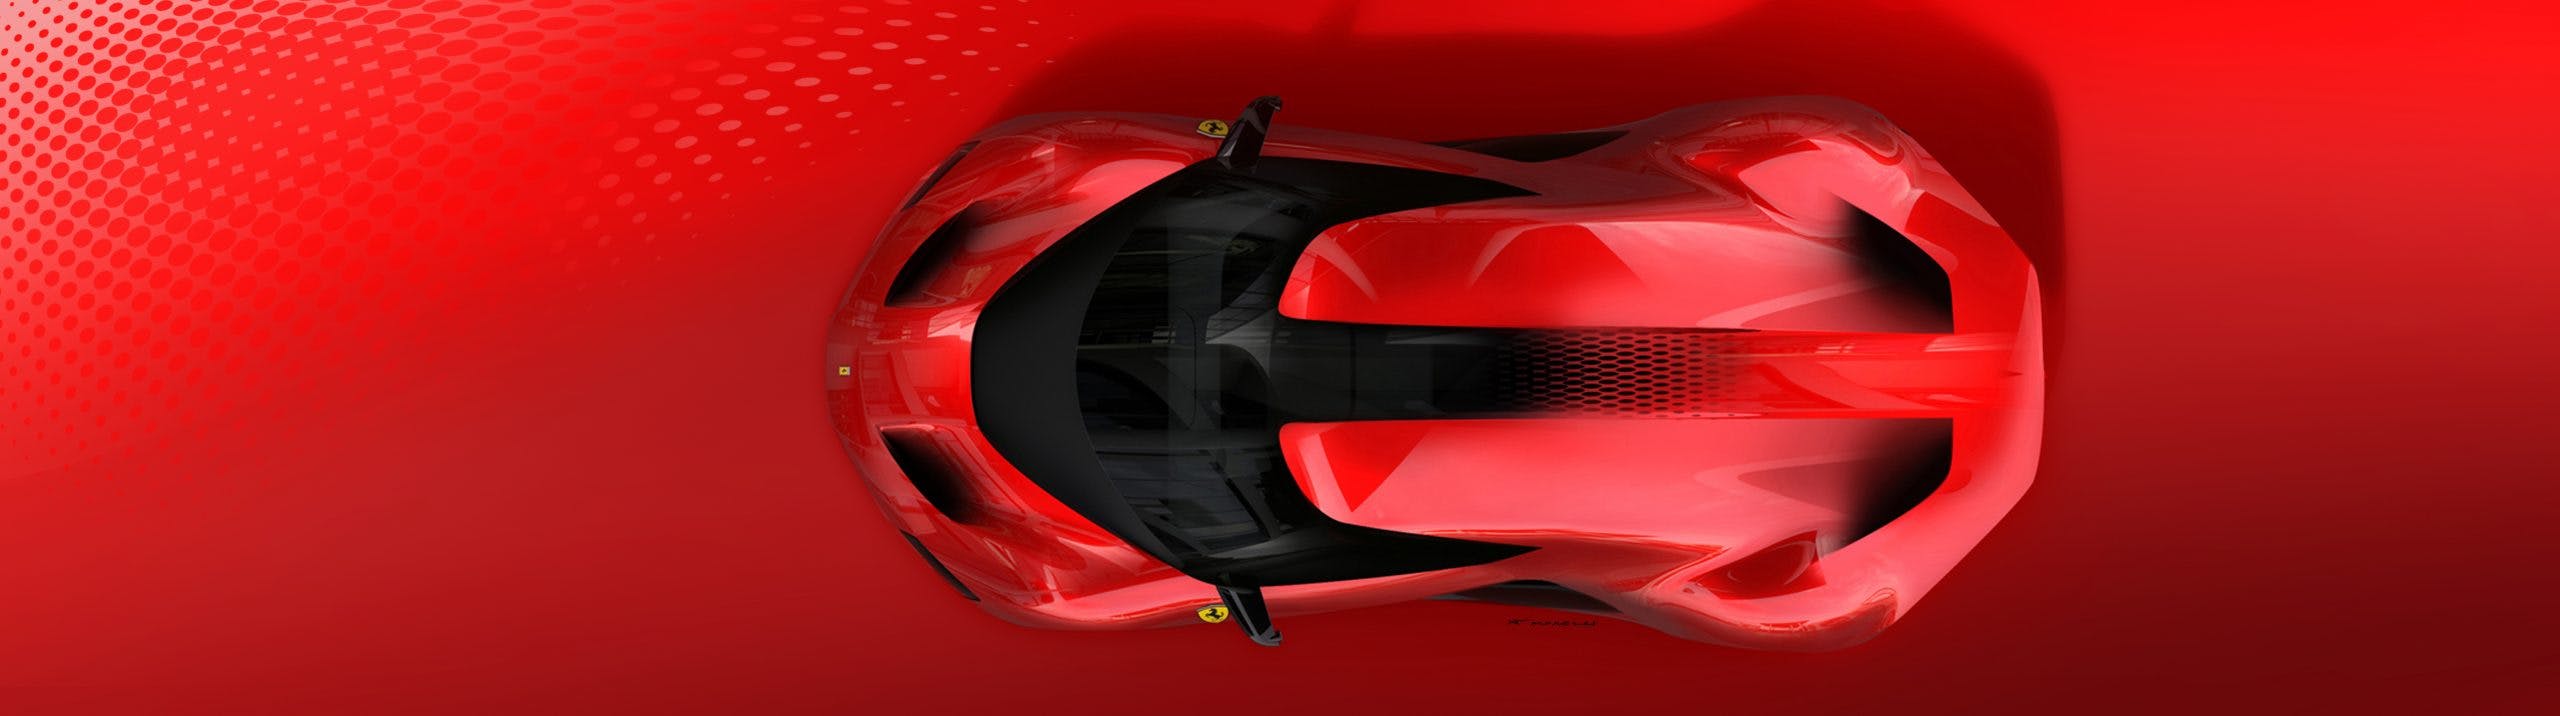 Ferrari SP48 Unica design sketch top down